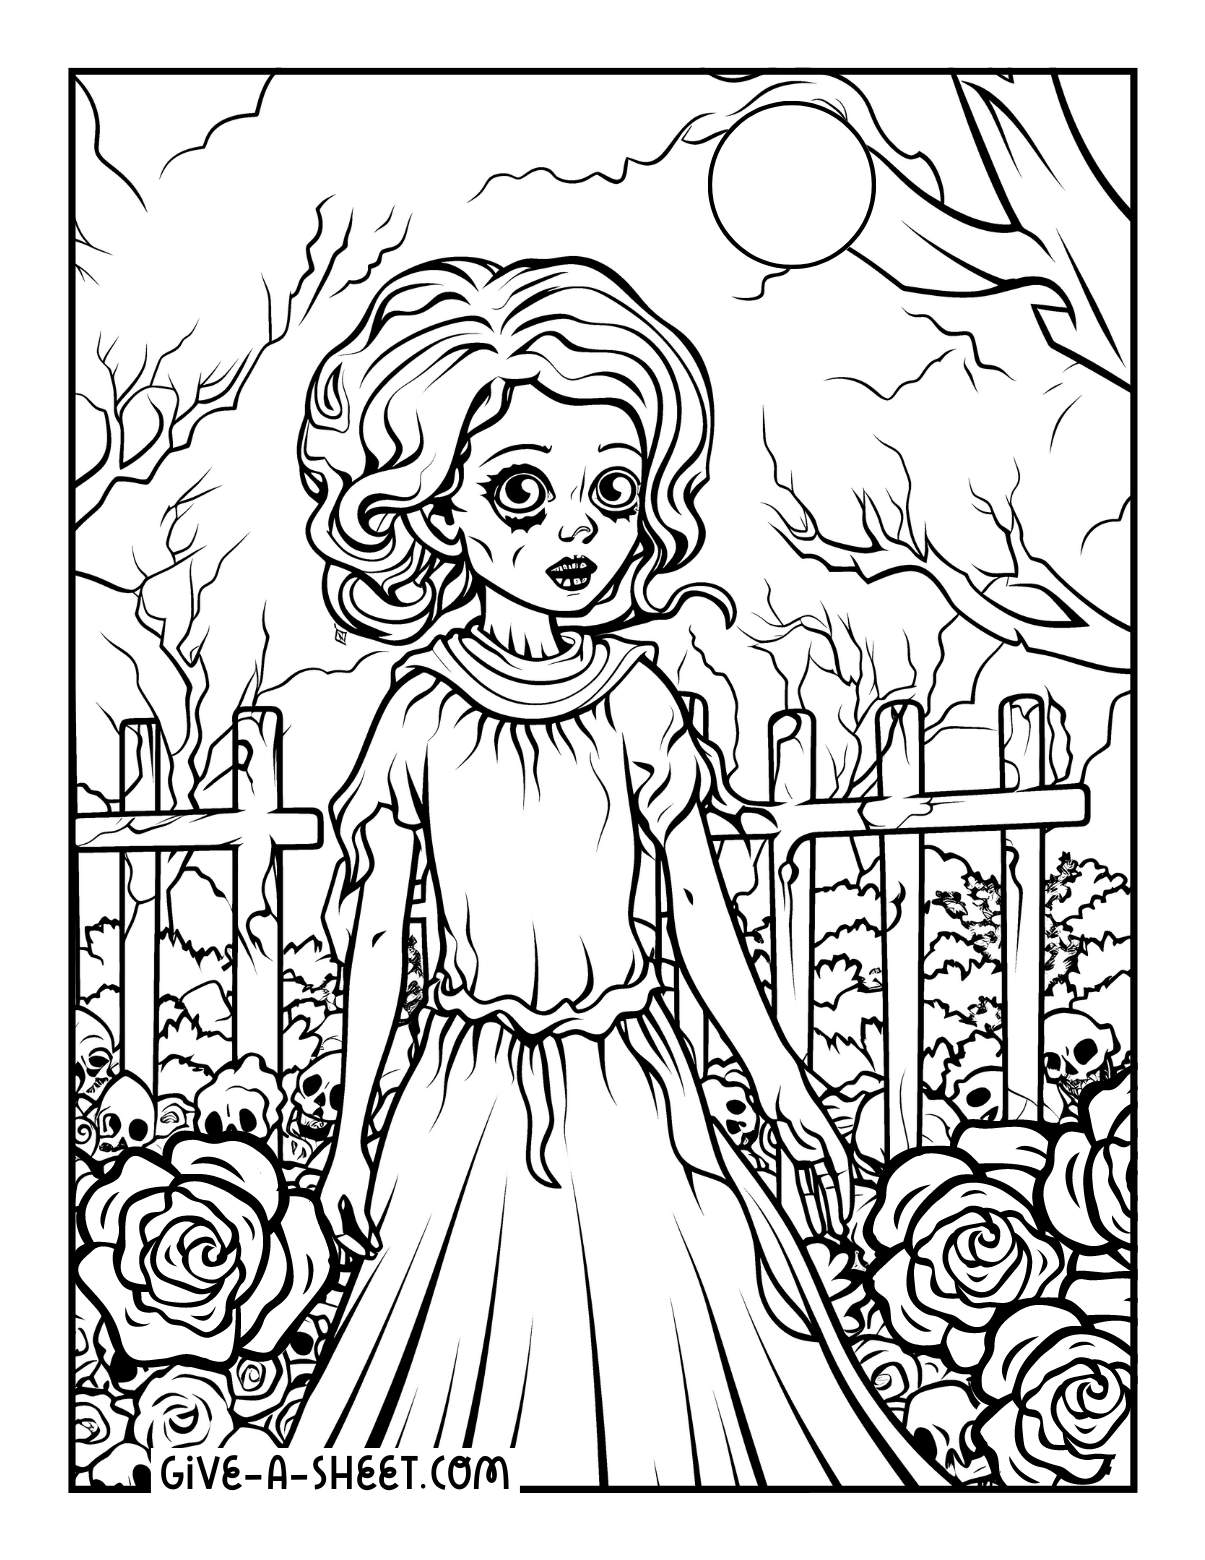 Corpse bride garden warfare coloring page.